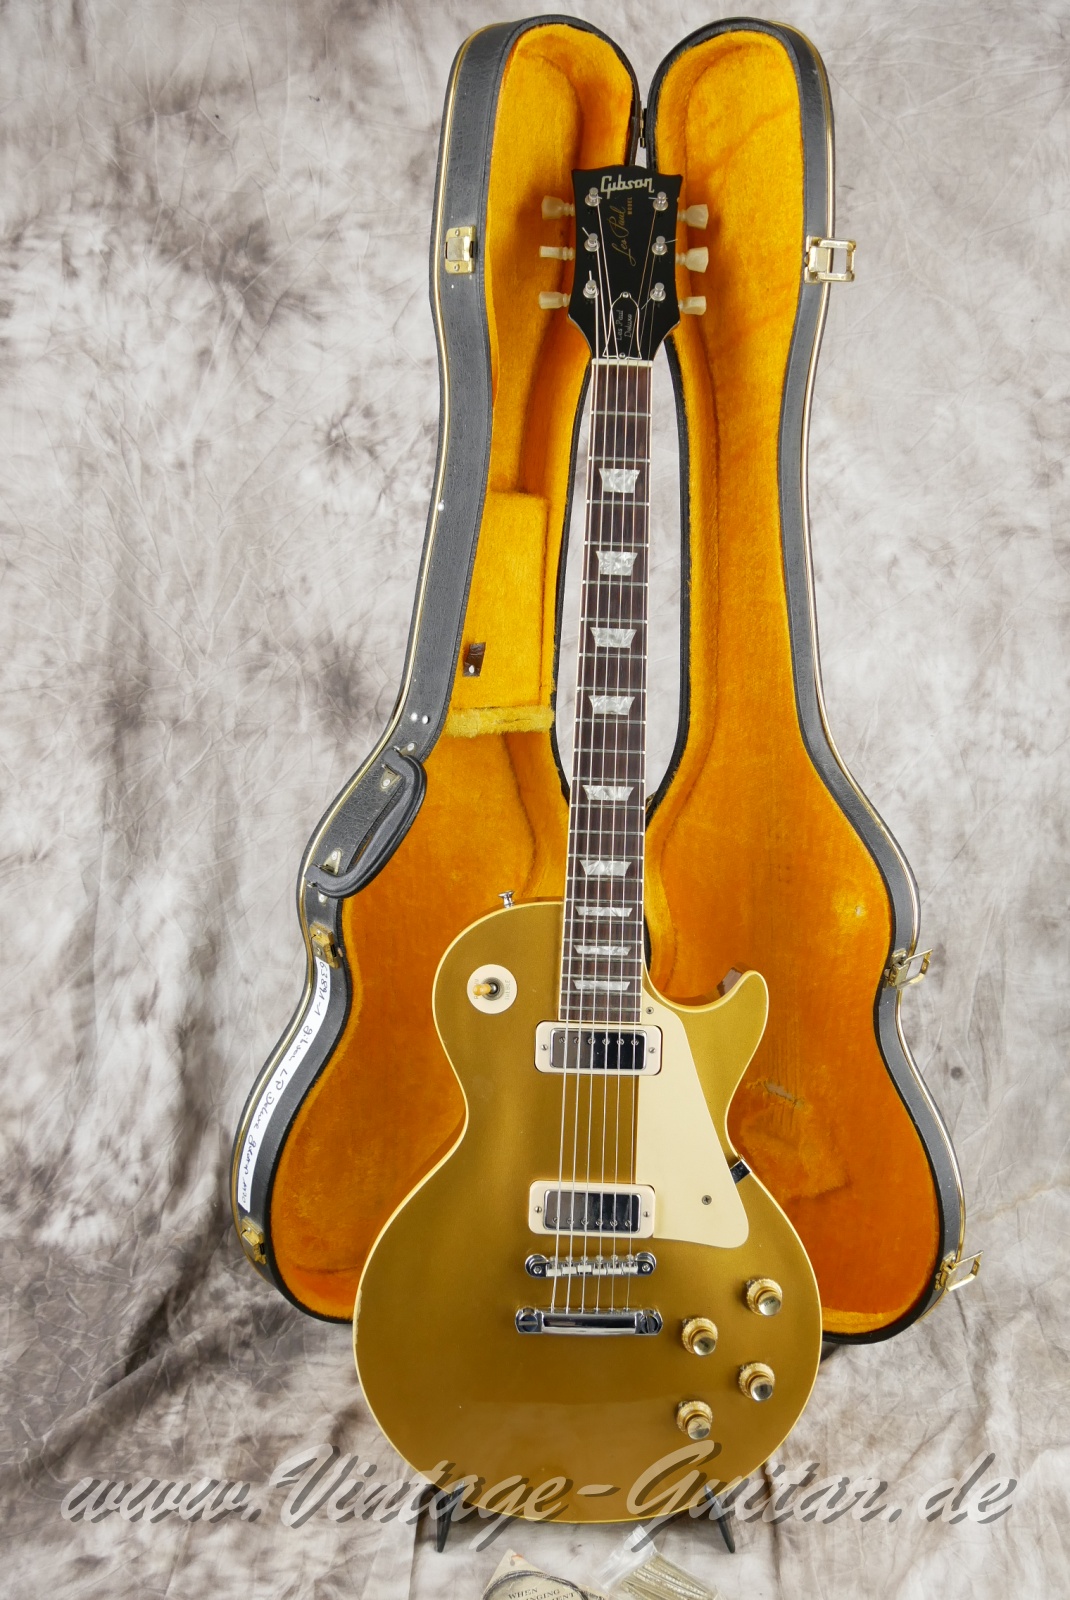 Gibson_Les Paul_Deluxe_Goldtop_1969_1970-026.JPG